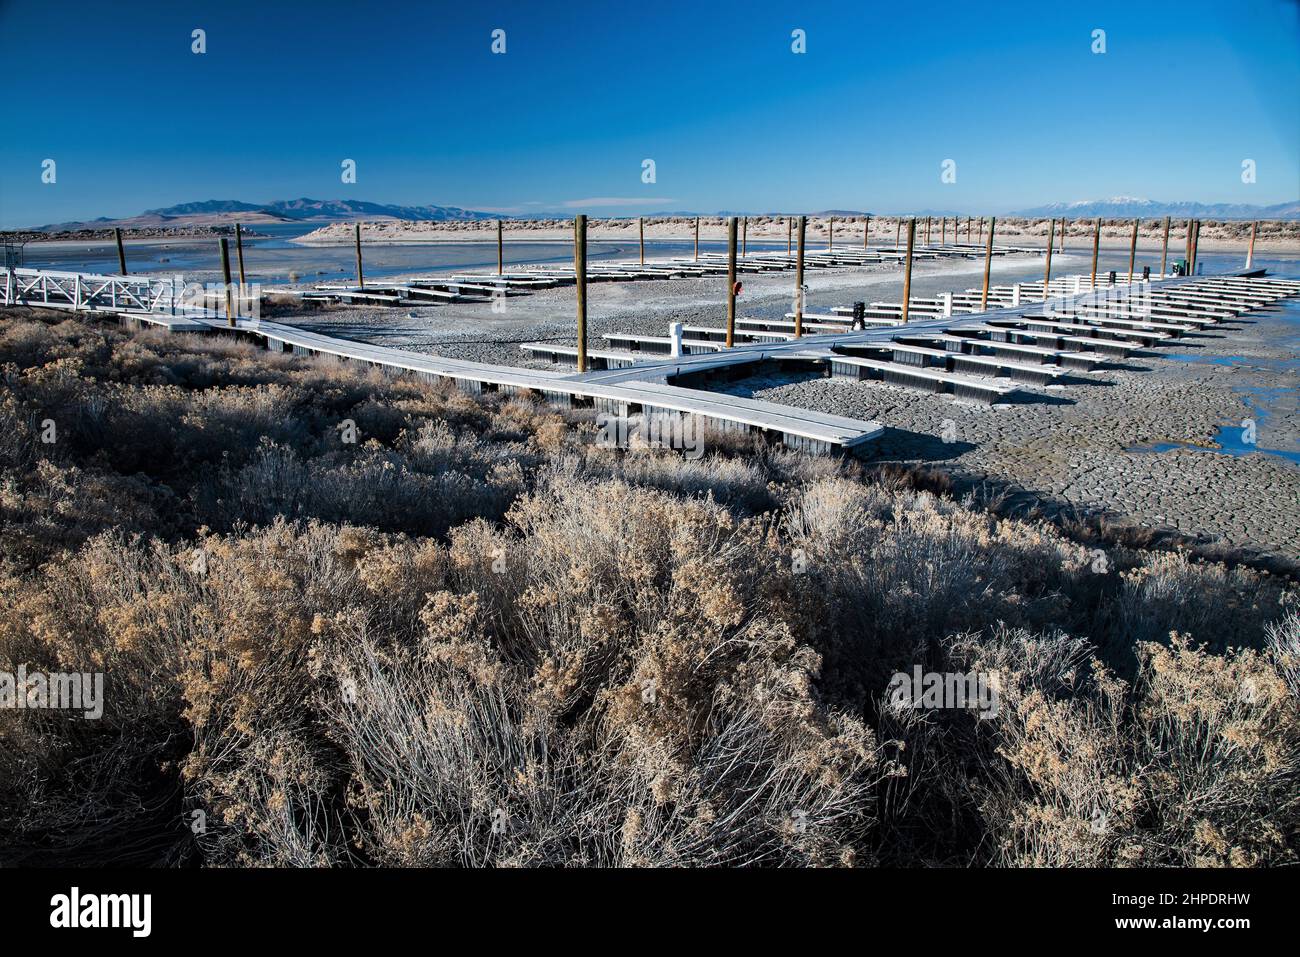 La barca abbandonata ormeggia sul Great Salt Lake. La siccità e le pratiche di irrigazione povere hanno accelerato l'evaporazione. Questo enorme lago sta scomparendo. Foto Stock